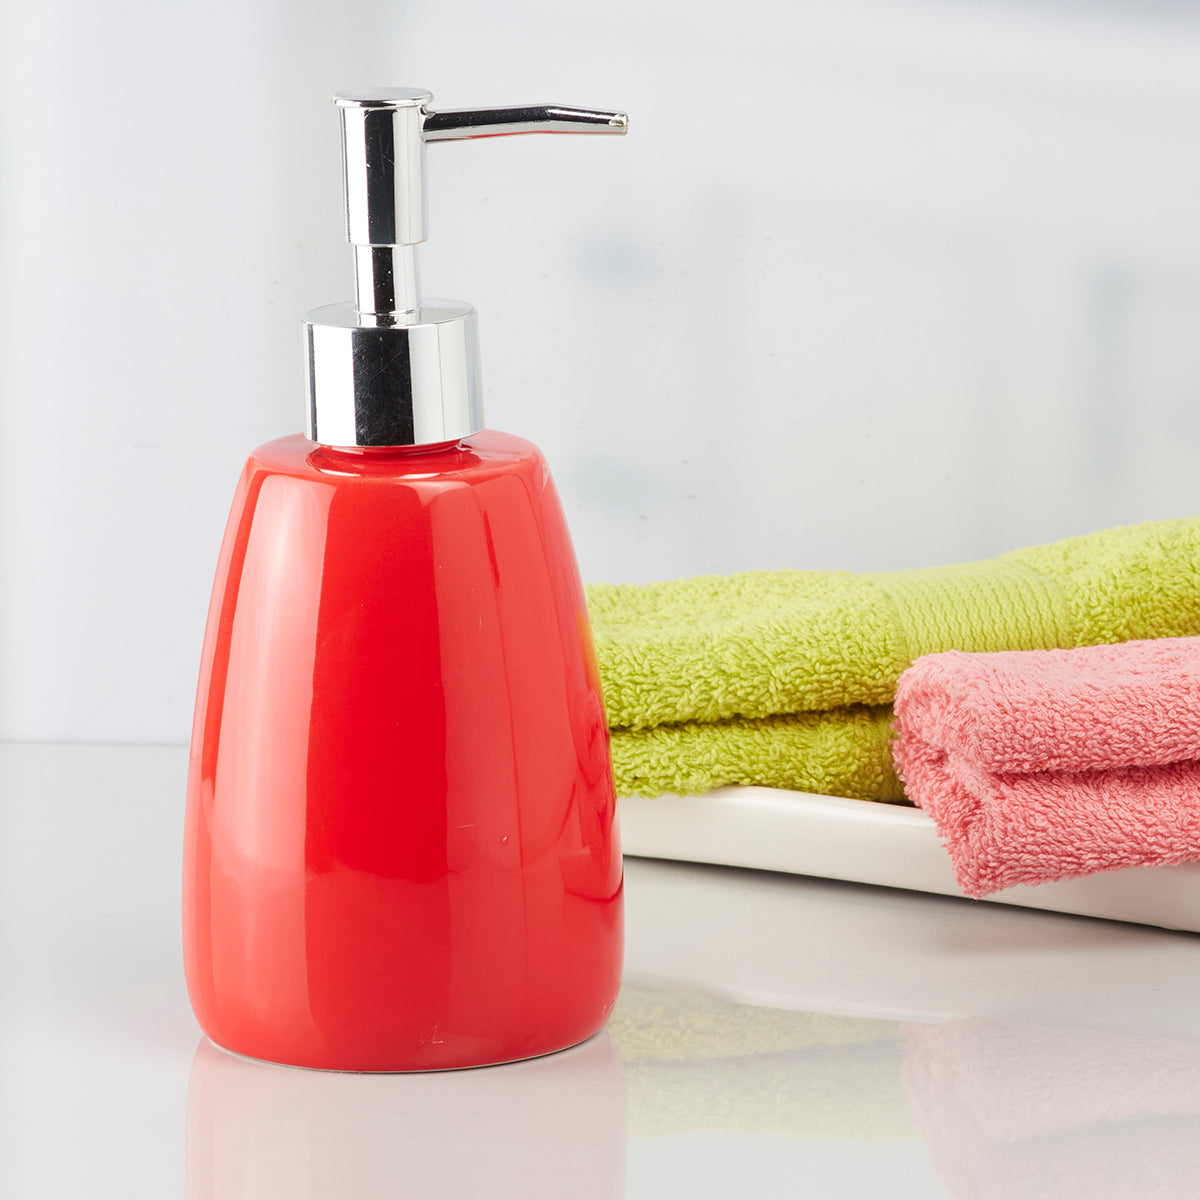 Ceramic Soap Dispenser handwash Pump for Bathroom, Set of 1, Orange (6033)